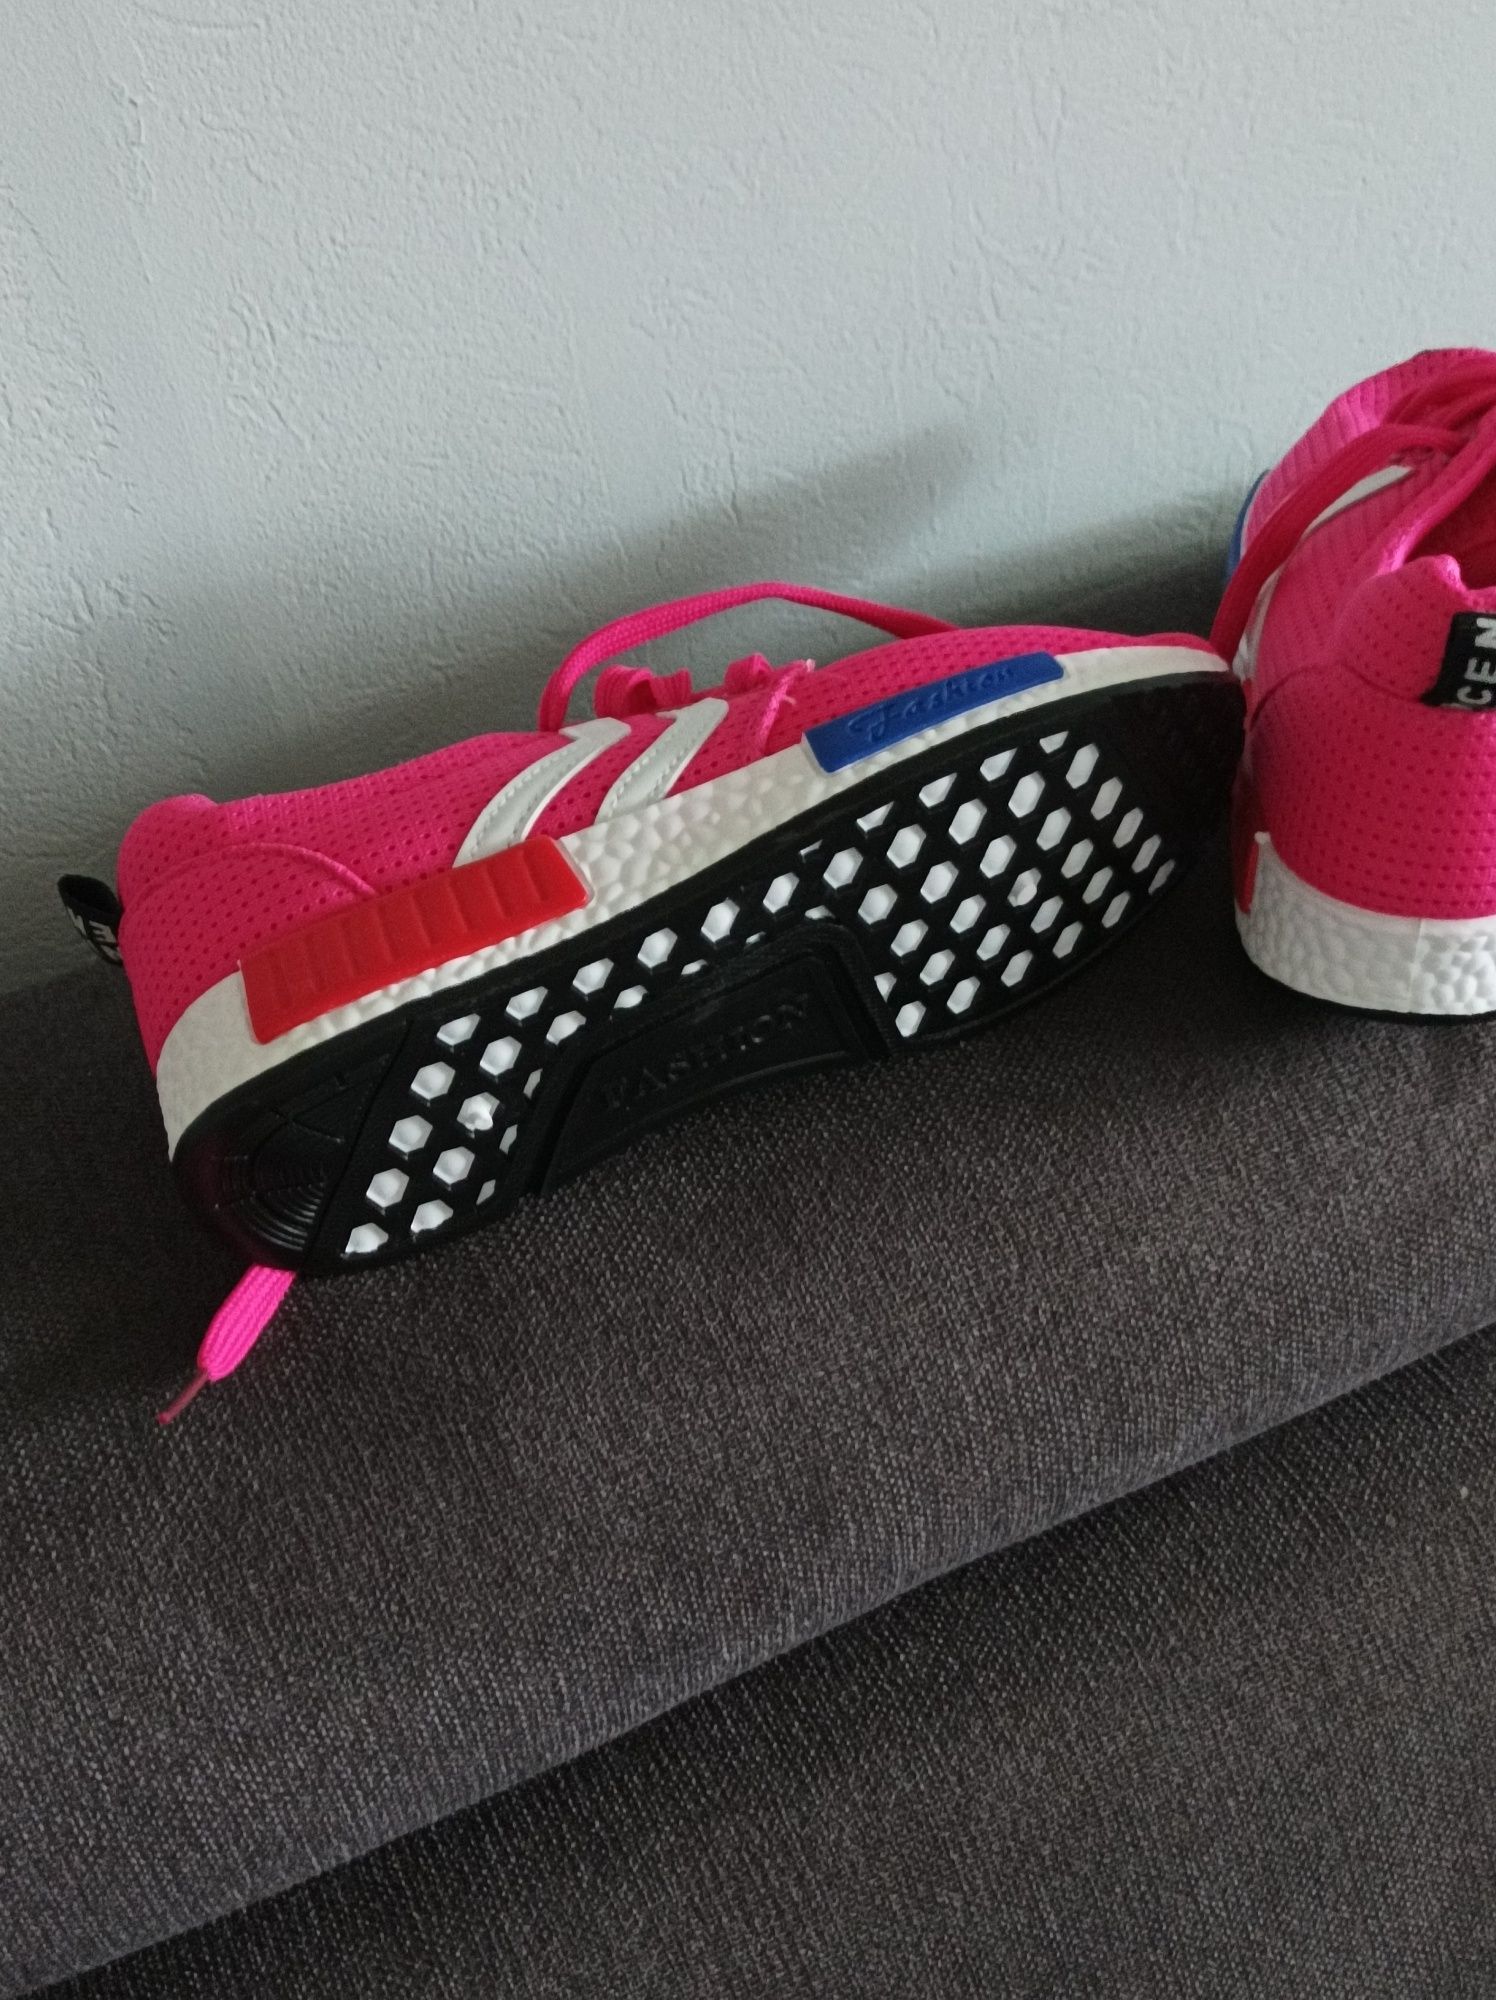 Buty sportowe damskie sneakersy różowe.